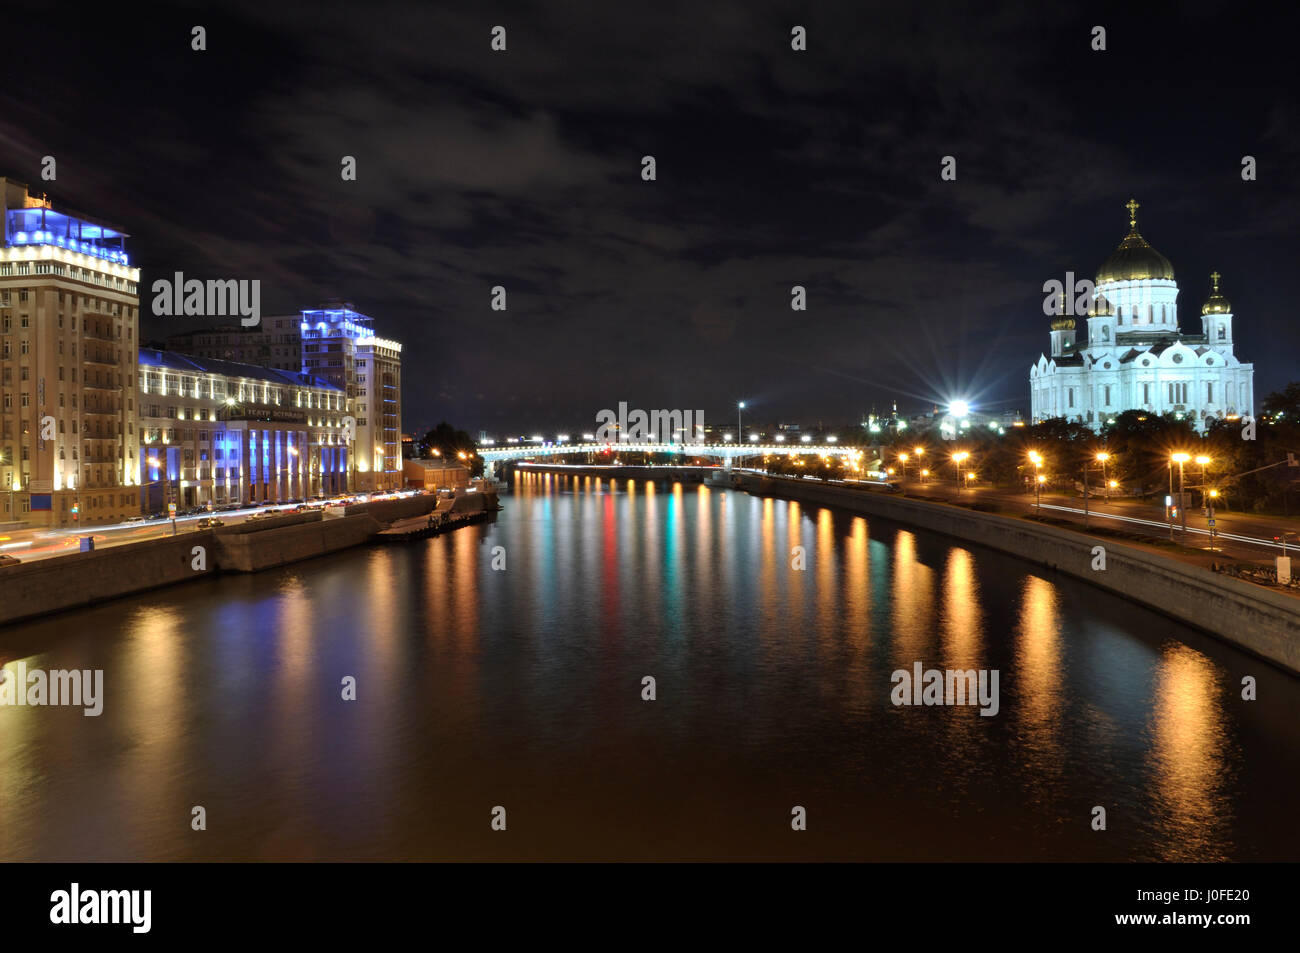 Moskwa-Ufer - Nacht Stadtbild Stockfoto